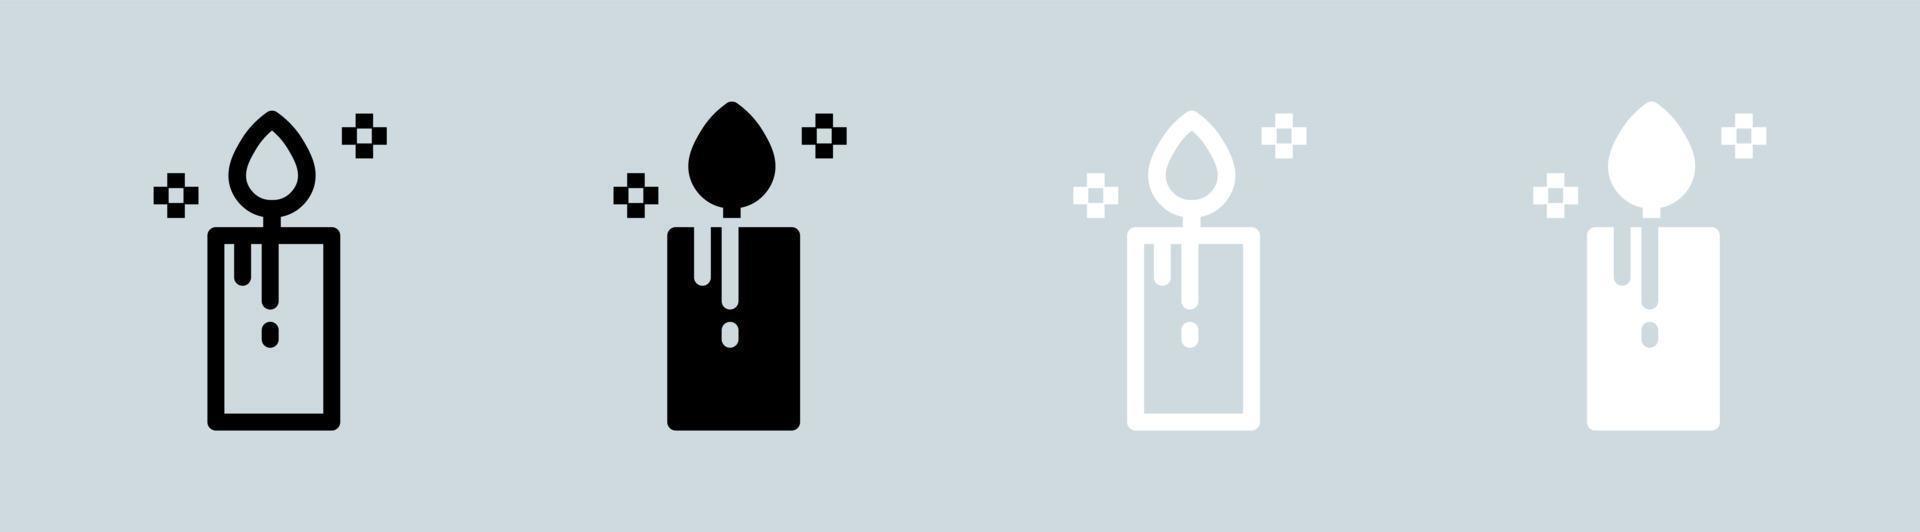 ljus ikon uppsättning i svart och vit. levande ljus tecken vektor illustration.